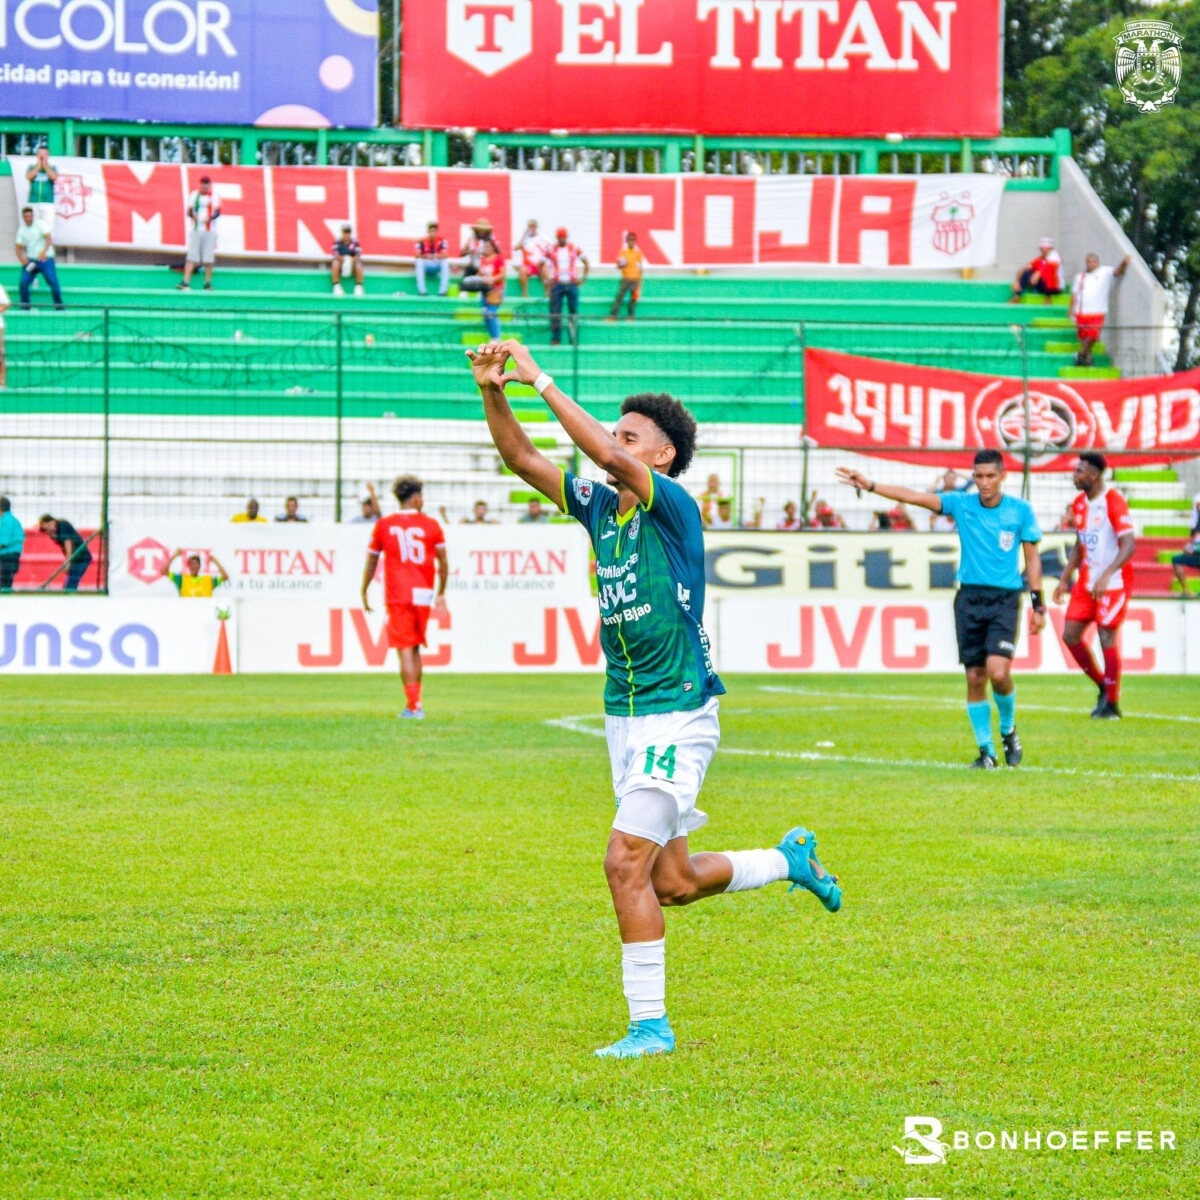 Marathón triunfa en el cierre de la jornada dos en Honduras